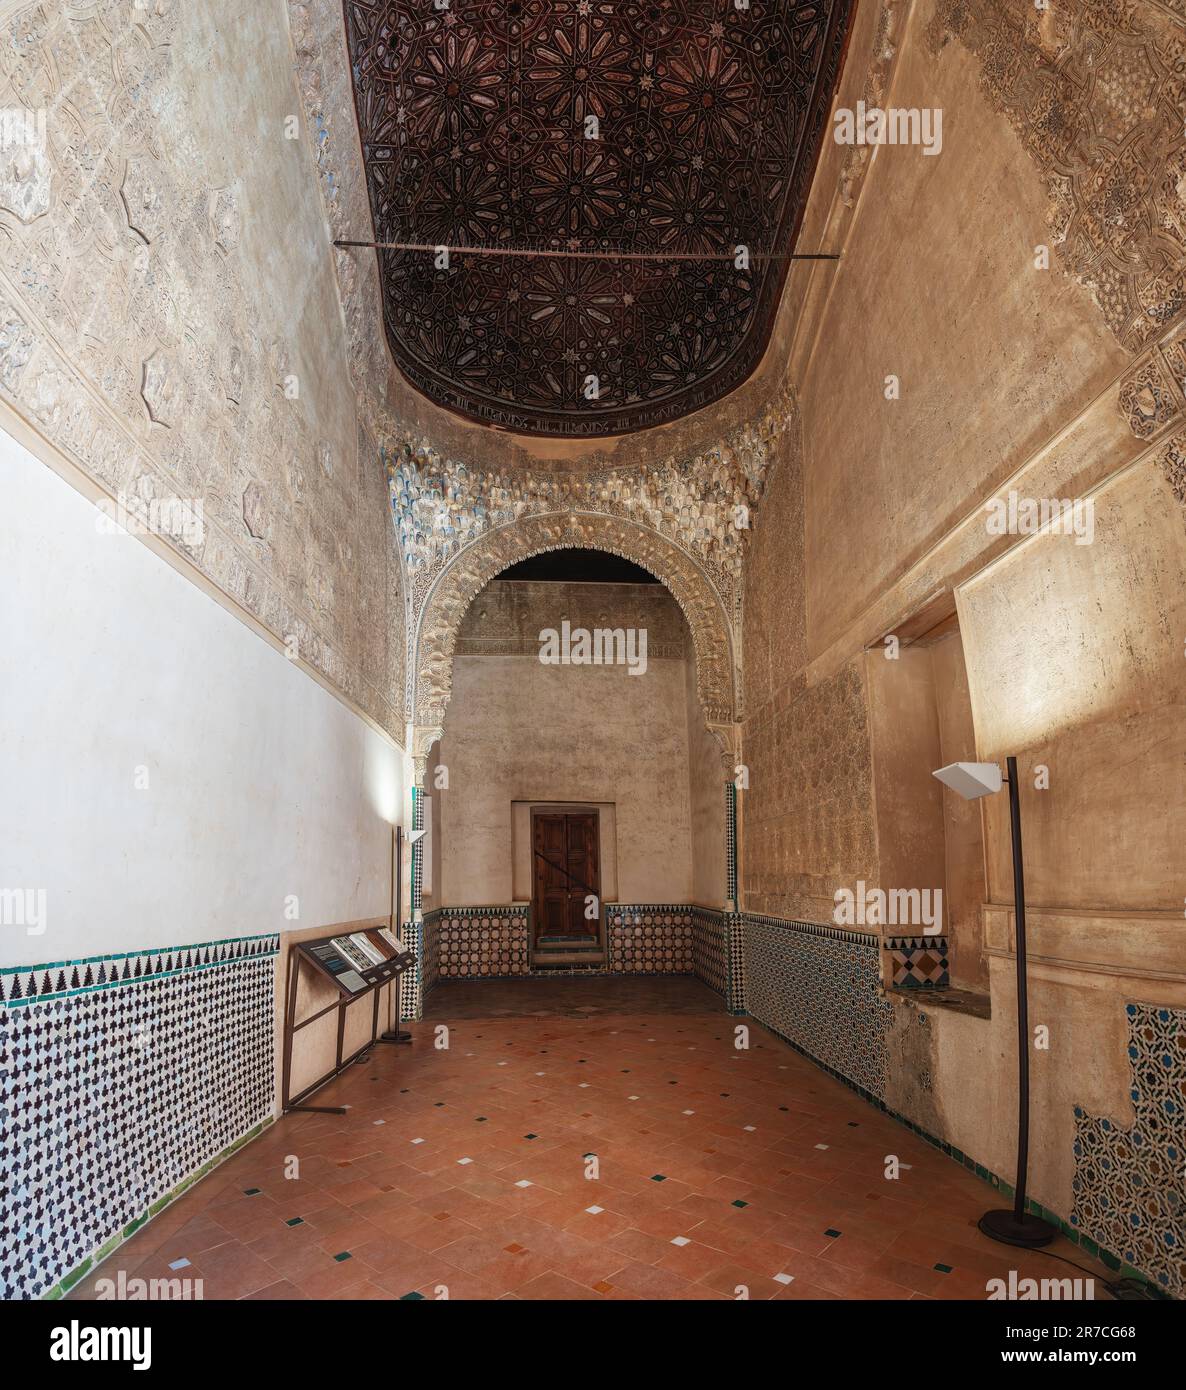 Salle du bateau (Sala de la Barca) aux palais Nasrides de l'Alhambra - Grenade, Andalousie, Espagne Banque D'Images